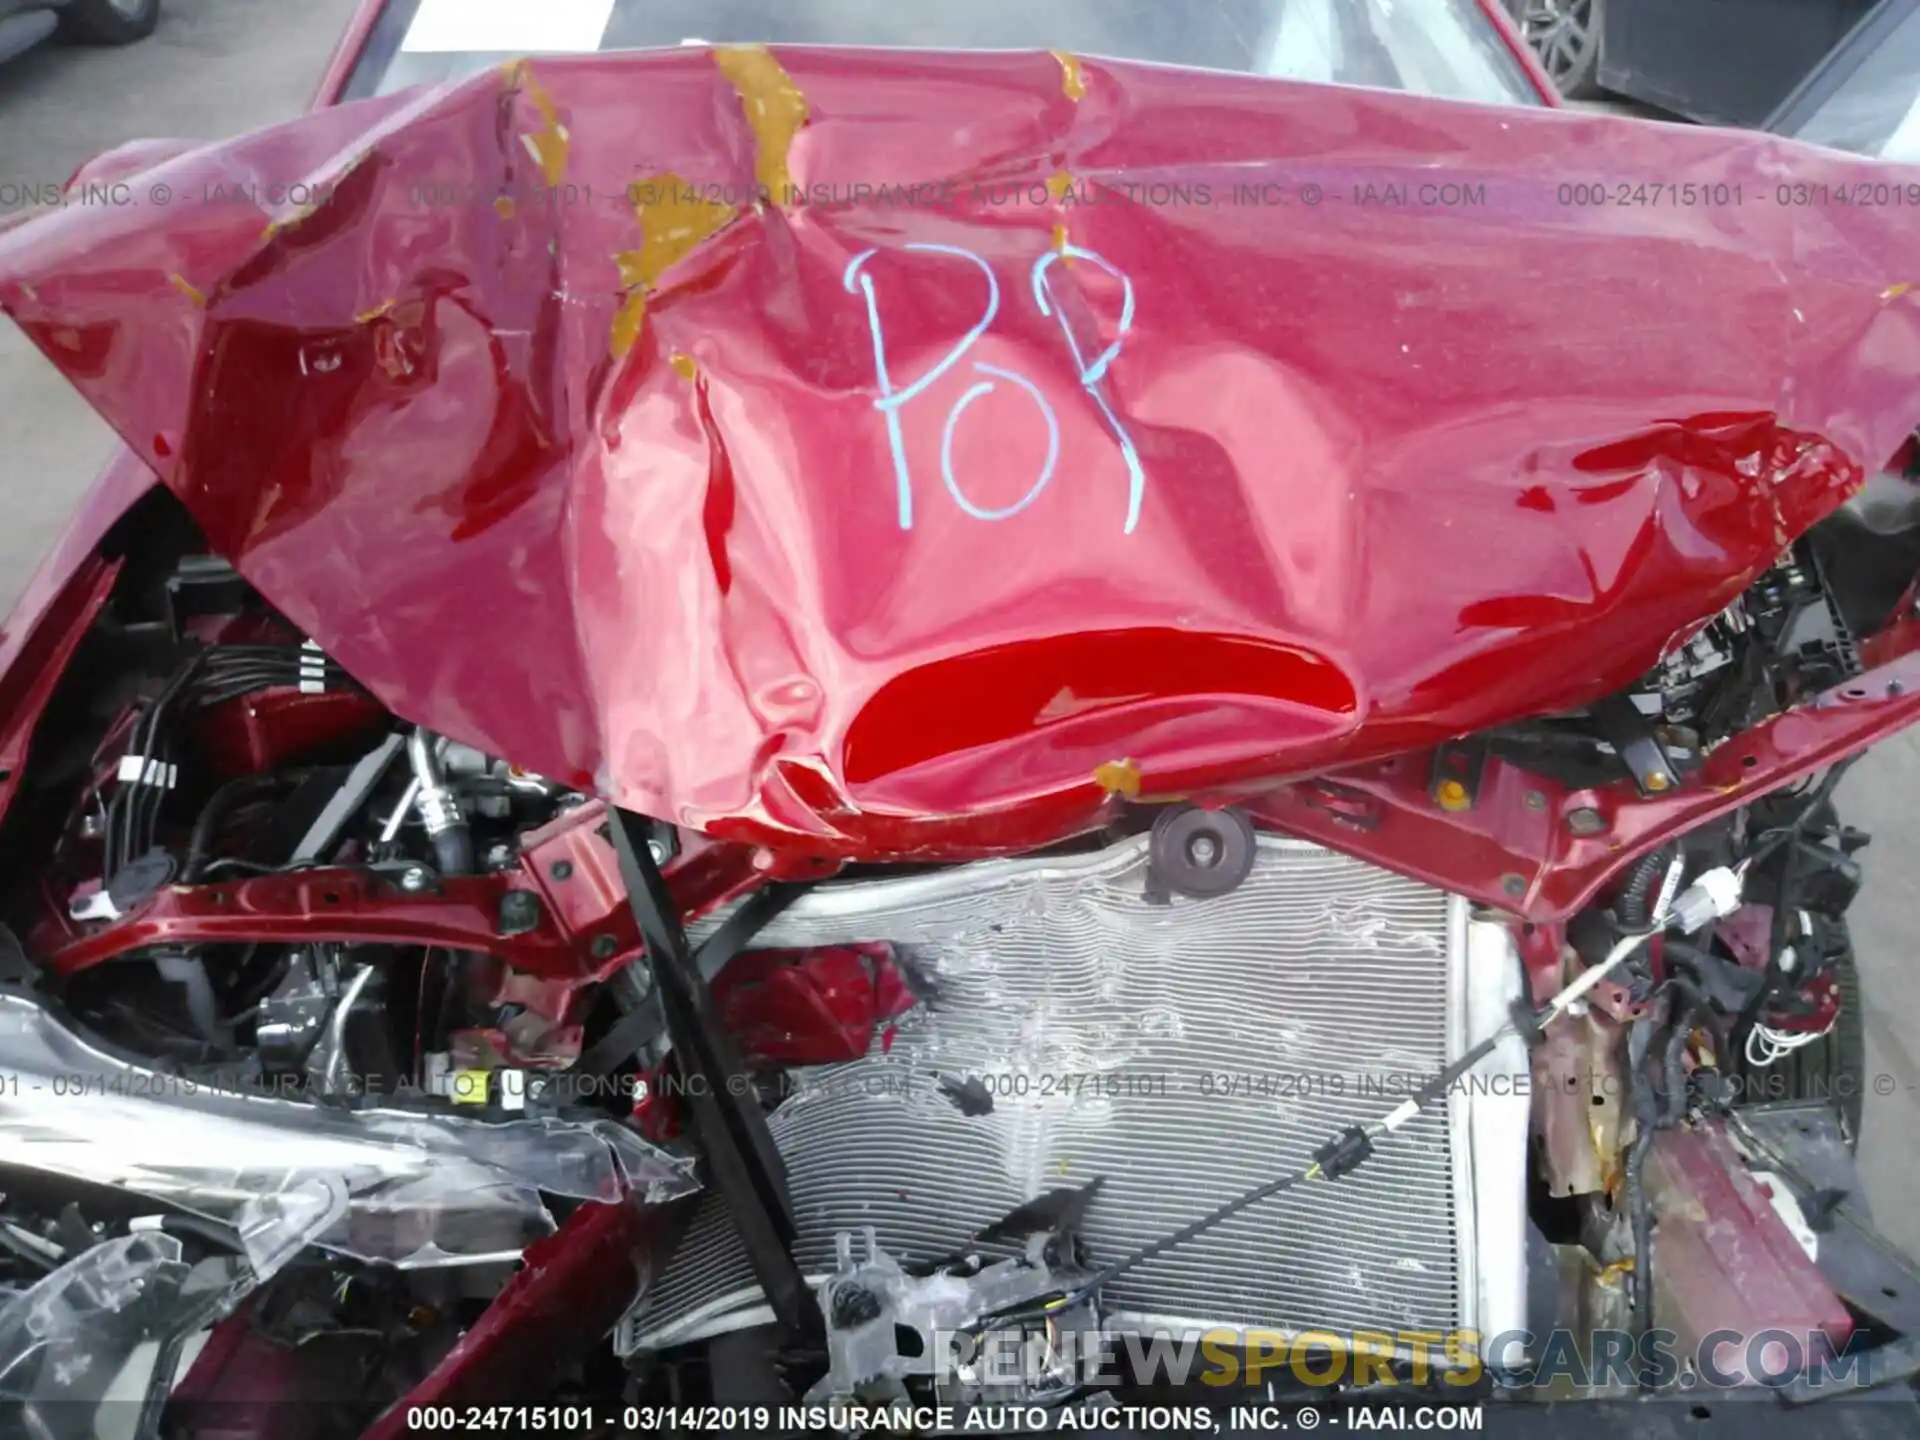 10 Photograph of a damaged car 5YFBURHE8KP913437 TOYOTA COROLLA 2019